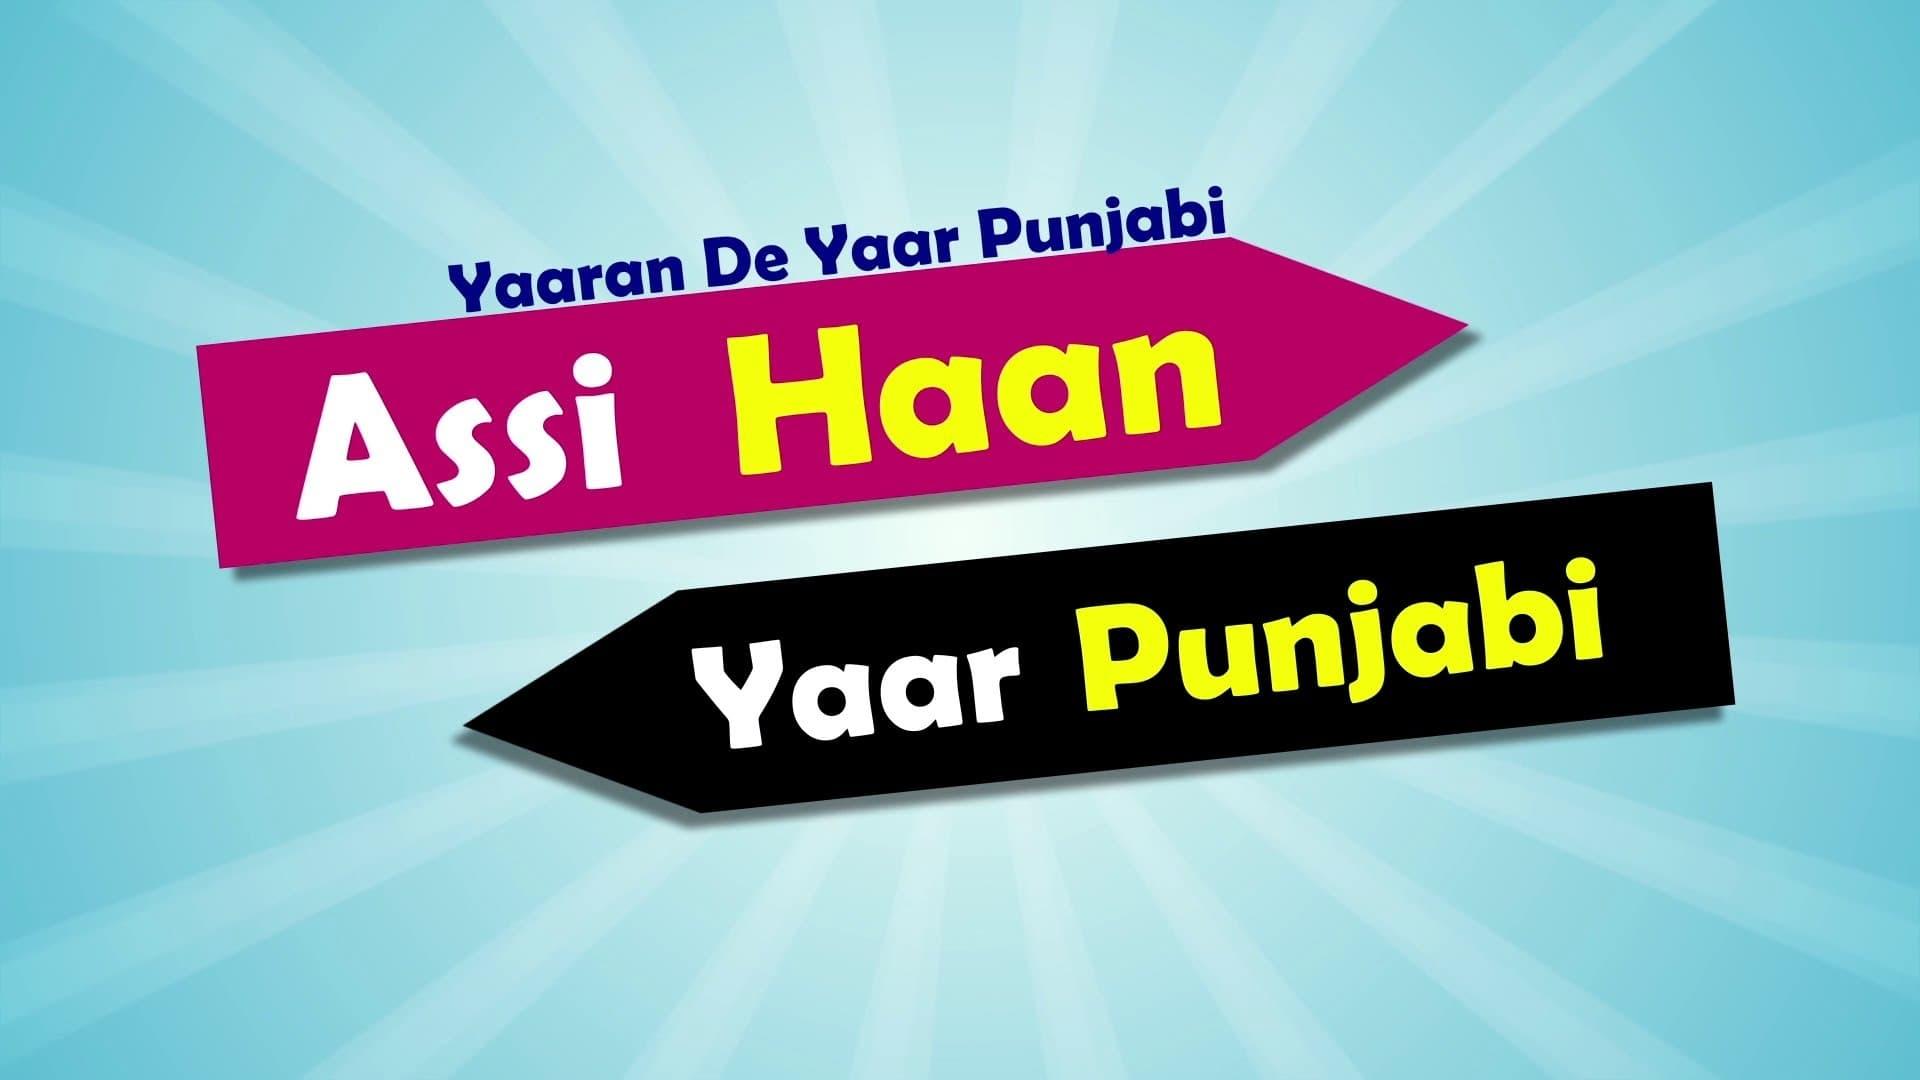 Yaaran De Yaar Punjabi - Assi Haan Yaar Punjabi backdrop